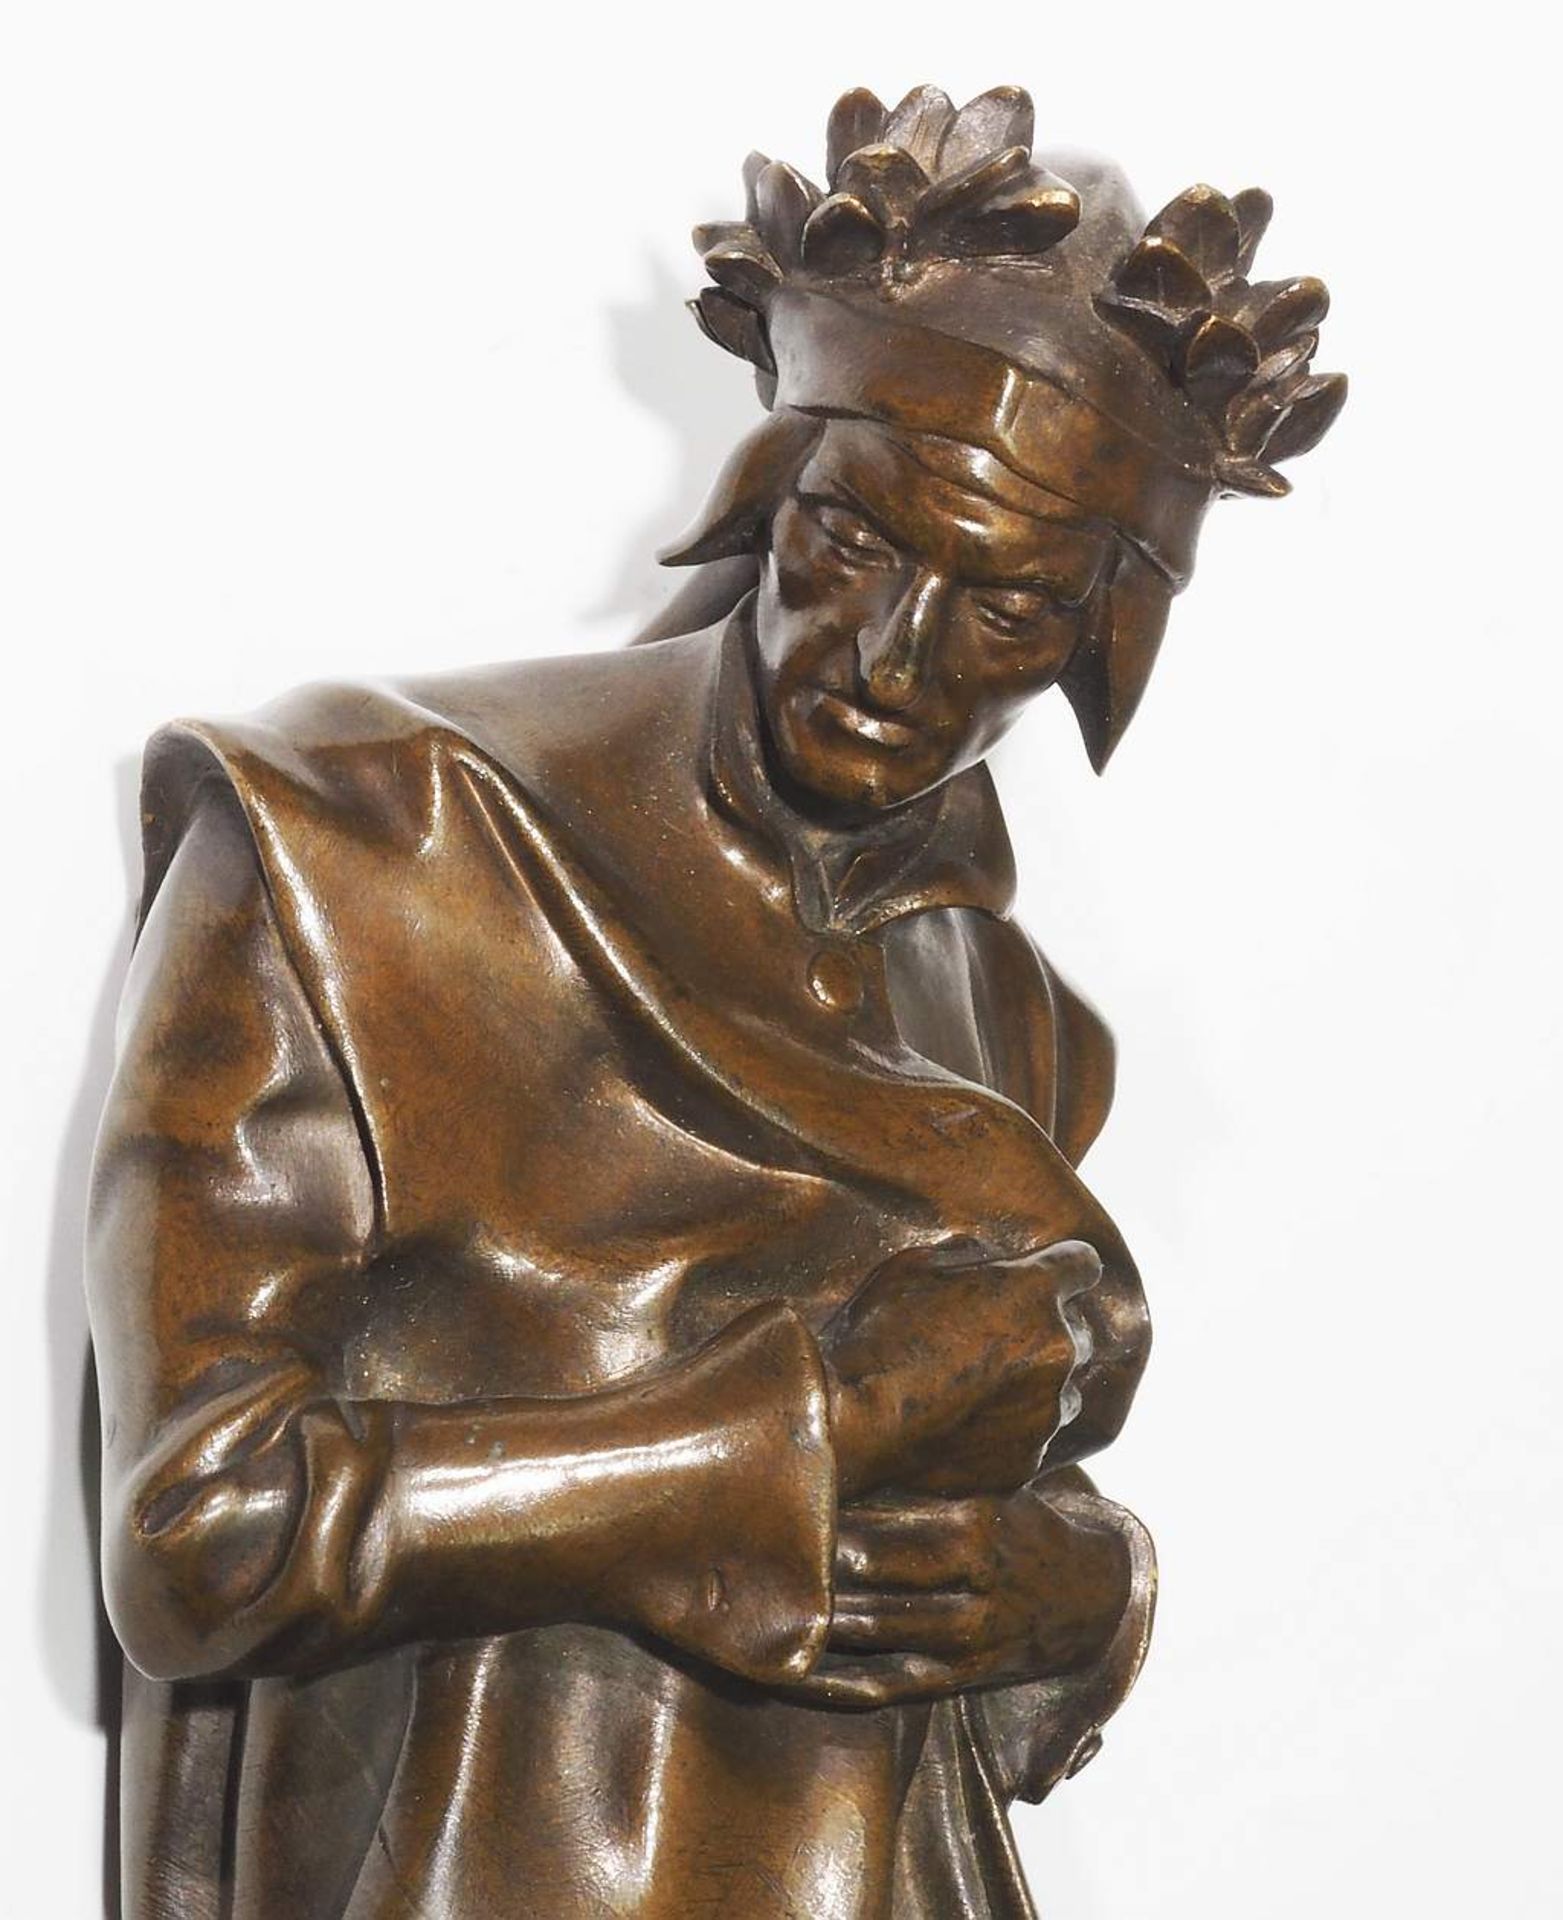 AUBÉ, Jean Paul. Bronzestatue "Dante", Frankreich, Anfang 20. Jahrhundert. - Image 11 of 11